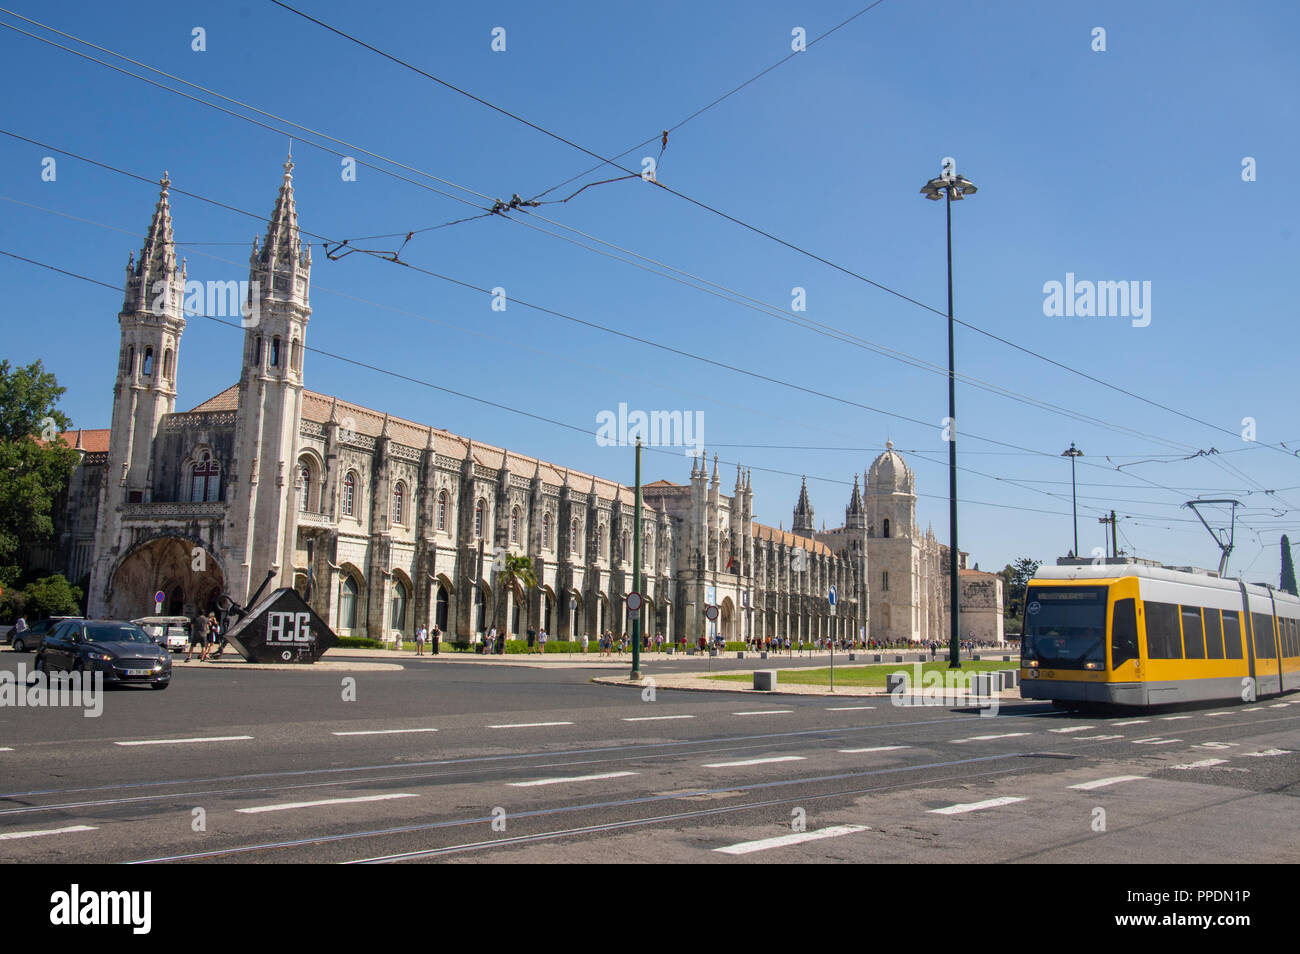 En tram avant de monastère des Hiéronymites Jeronimos, portugais, Belém, Lisbonne , Portugal Banque D'Images